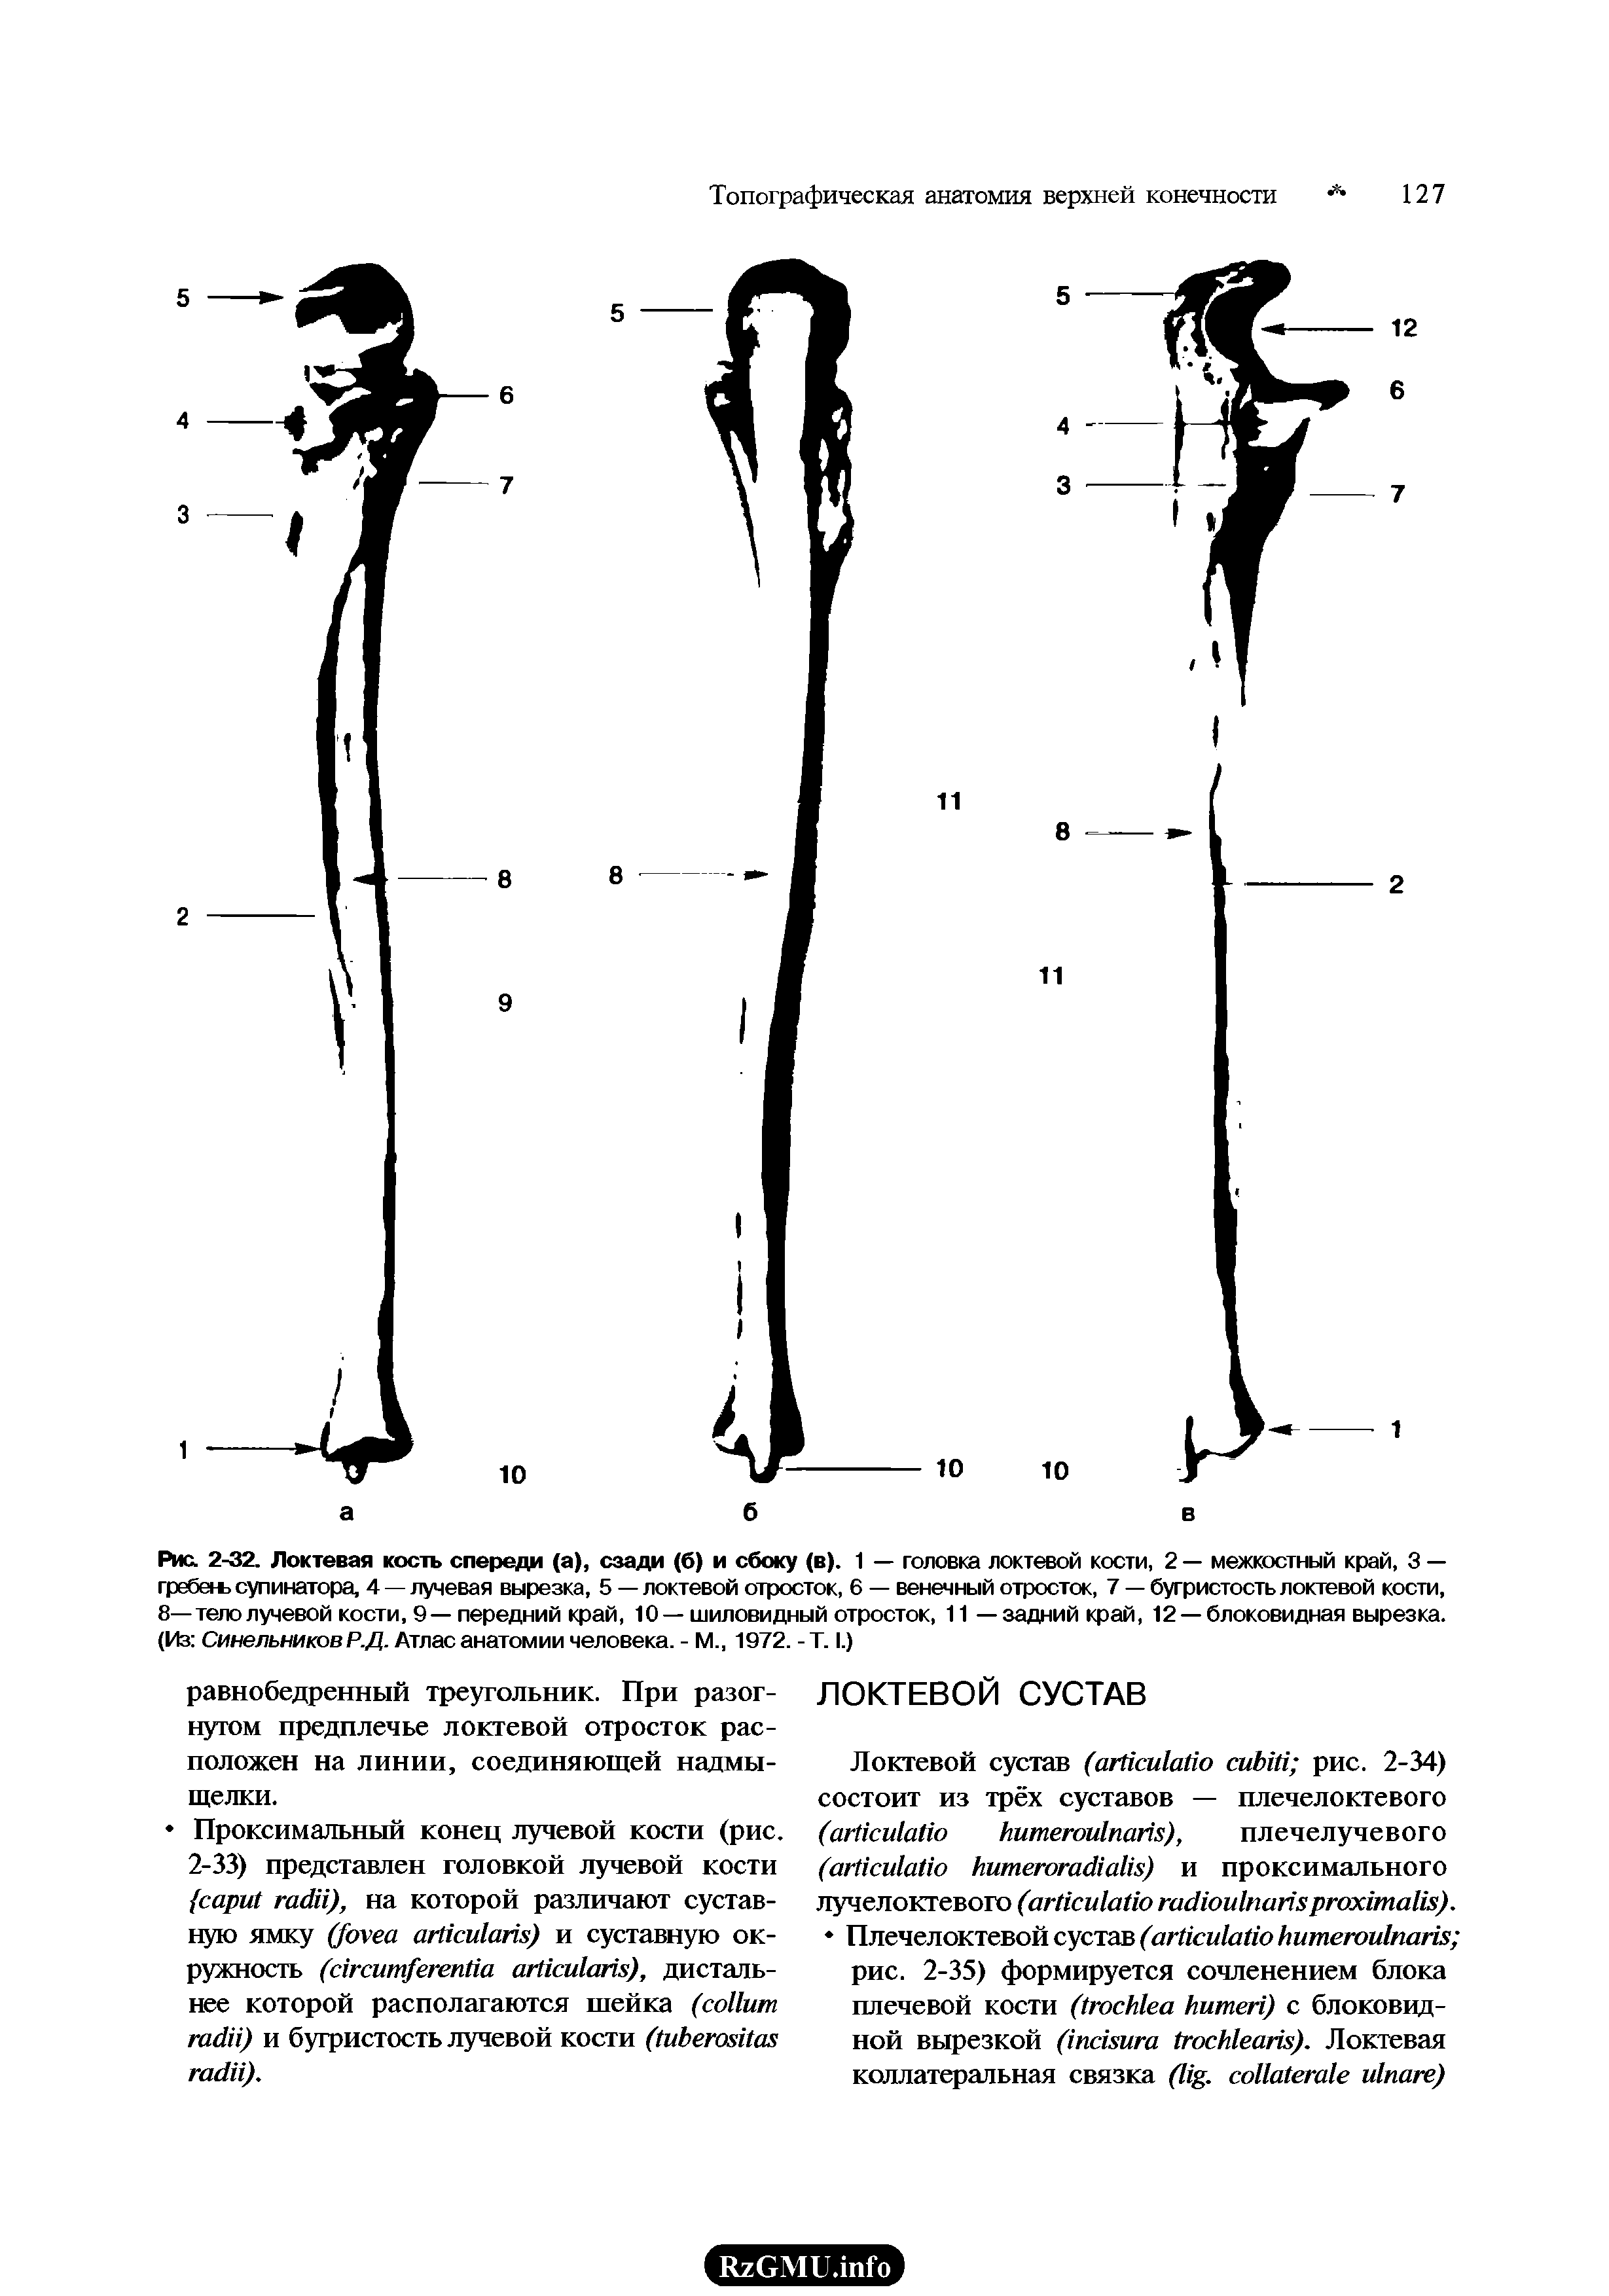 Рис. 2-32. Локтевая кость спереди (а), сзади (б) и сбоку (в). 1 — головка локтевой кости, 2 — межкостный край, 3 — гребегь супинатора, 4 — лучевая вырезка, 5 — локтевой отросток, 6 — венечный отросток, 7 — бугристость локтевой кости, 8—тело лучевой кости, 9—передний край, 10—шиловидный отросток, 11 — задний край, 12 —блоковидная вырезка. (Из Синельников Р.Д. Атлас анатомии человека. - М., 1972. -Т. I.)...